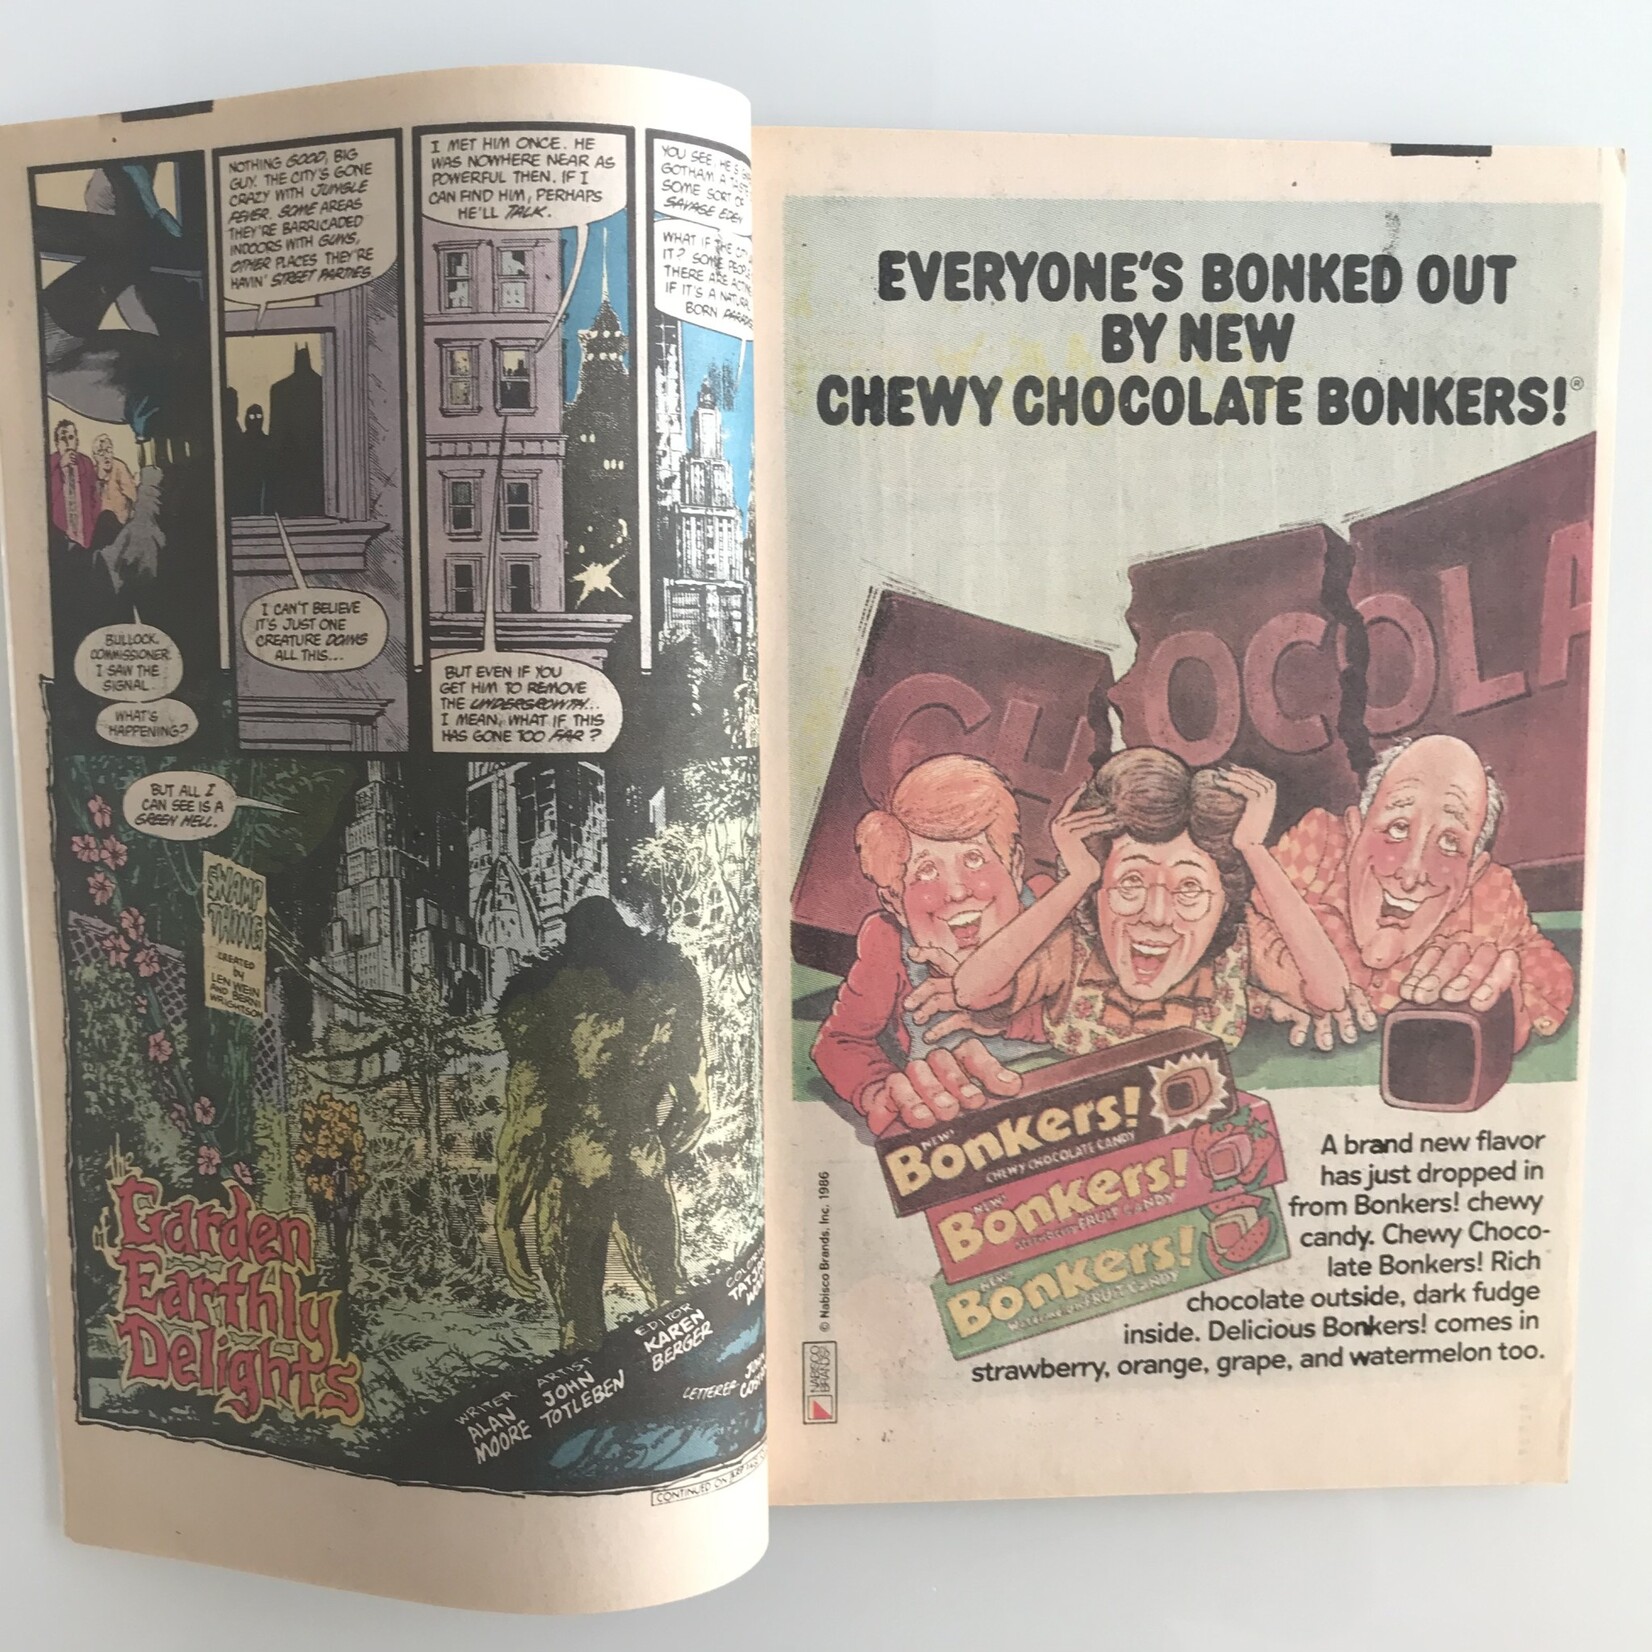 Swamp Thing - Vol. 2 #53 October 1986 - Comic Book